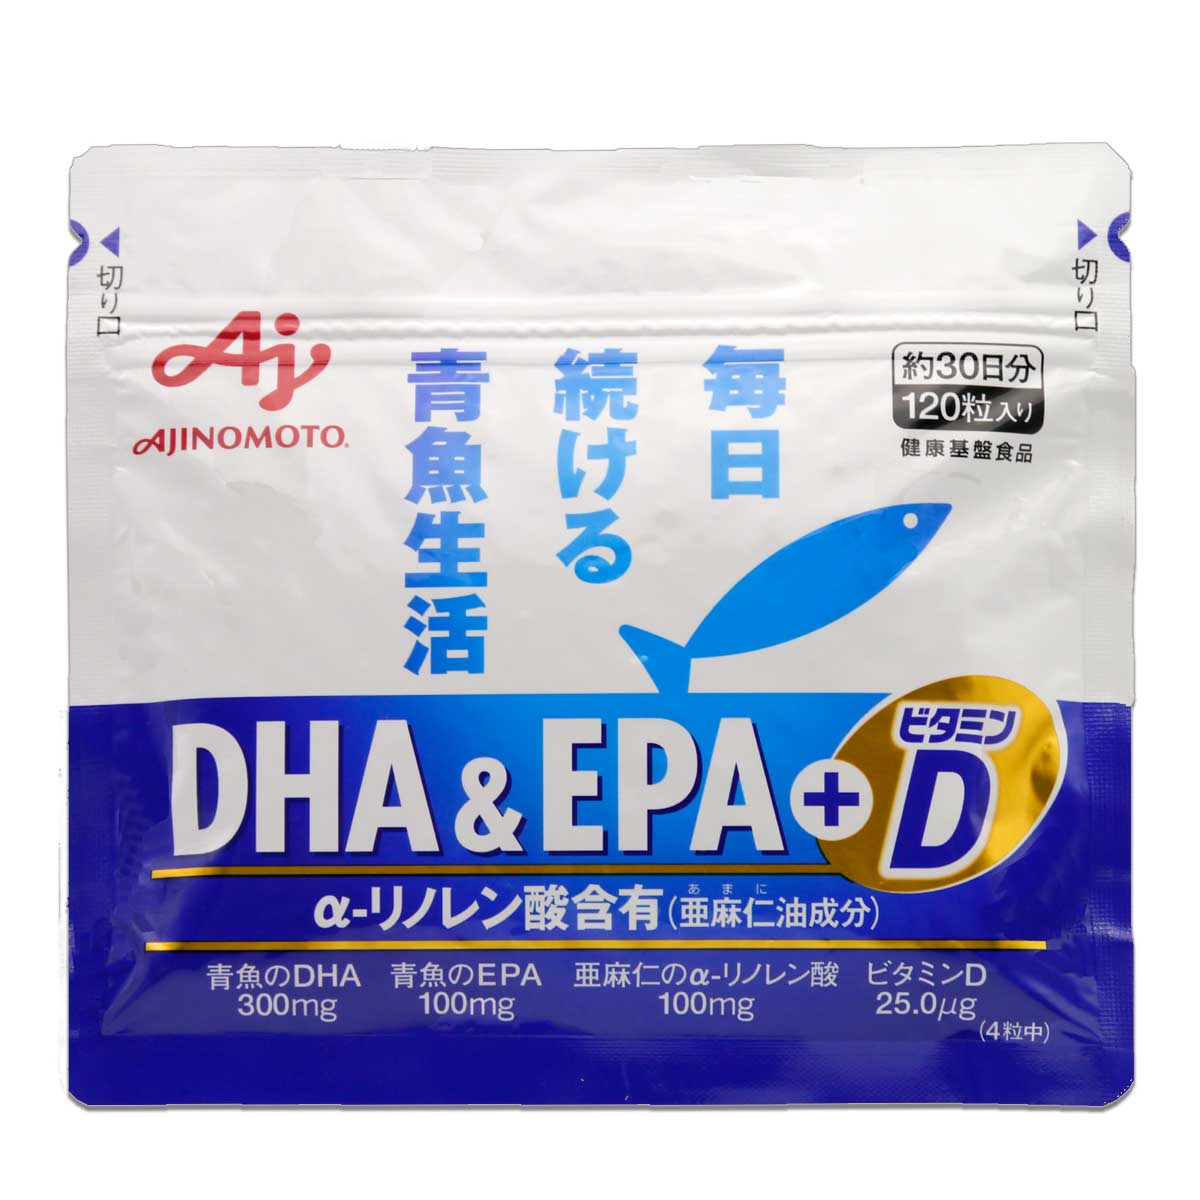 味の素 DHA&EPA+ビタミンD 57.2g ( 1粒477mg × 120粒 ) 約30日分 サプリ サプリメント DHA EPA ビタミンD ビタミンE オメガ3 脂肪酸 α-リノレン酸 メール便送料無料SPL / 味の素DHAEPAビタDS01-02 / AMDEVD-01P